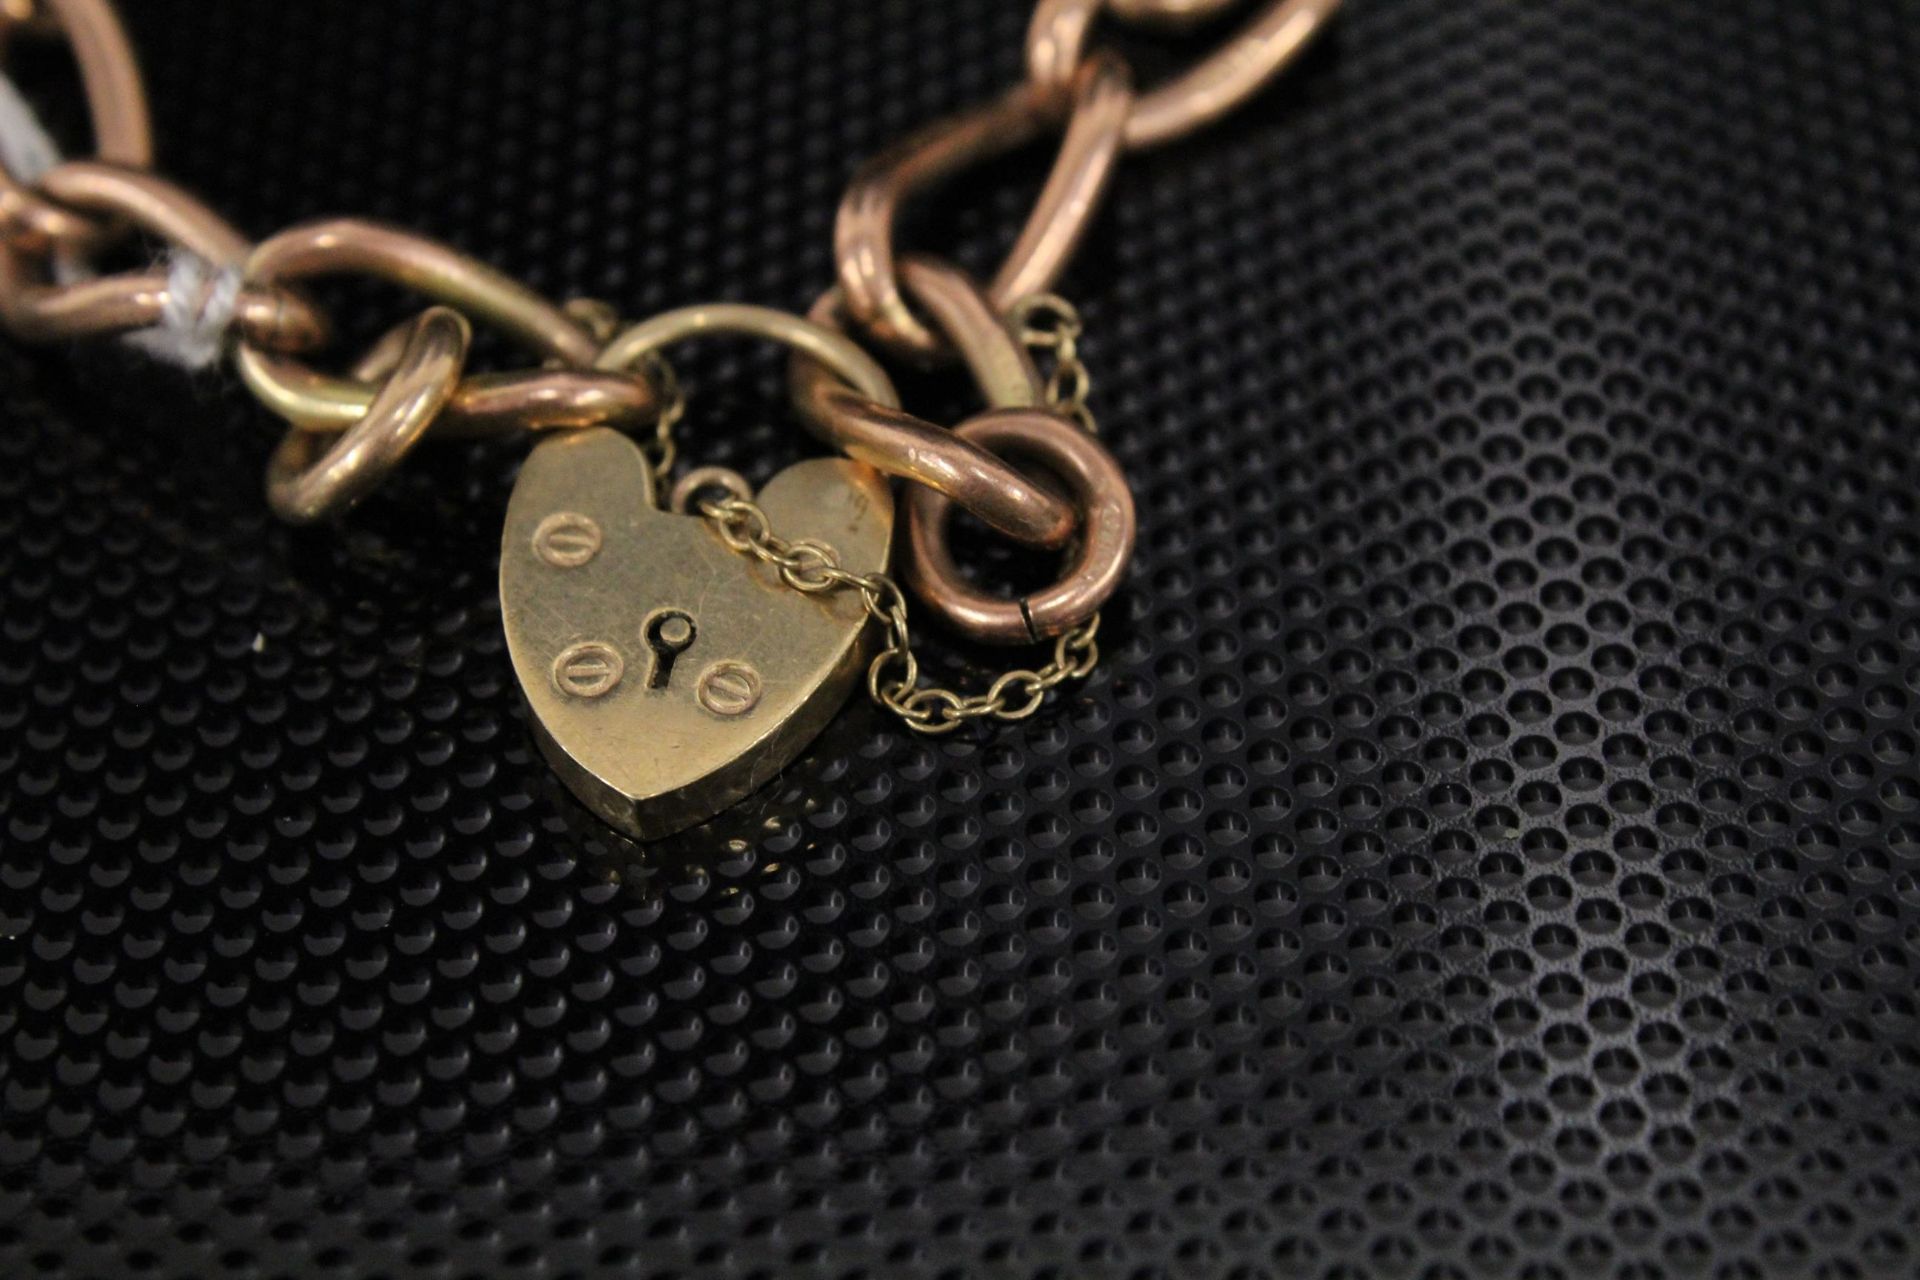 A 9ct Gold Broad Link Chain Bracelet 27gms. (Est. £200 - £400) - Image 2 of 2